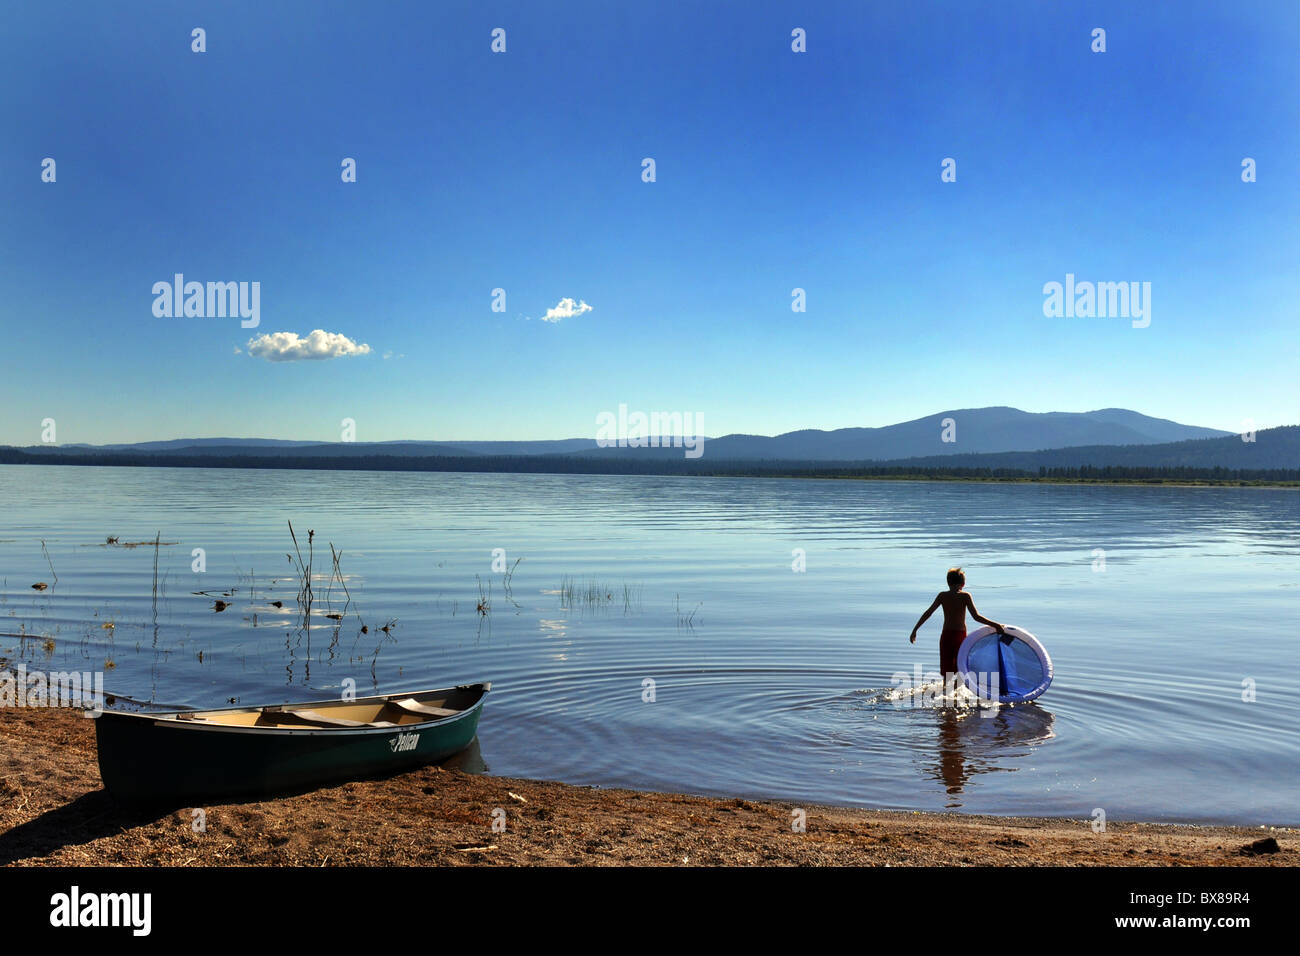 Un garçon baigne dans l'eau pour refroidir, Lake Almanor, California USA Banque D'Images